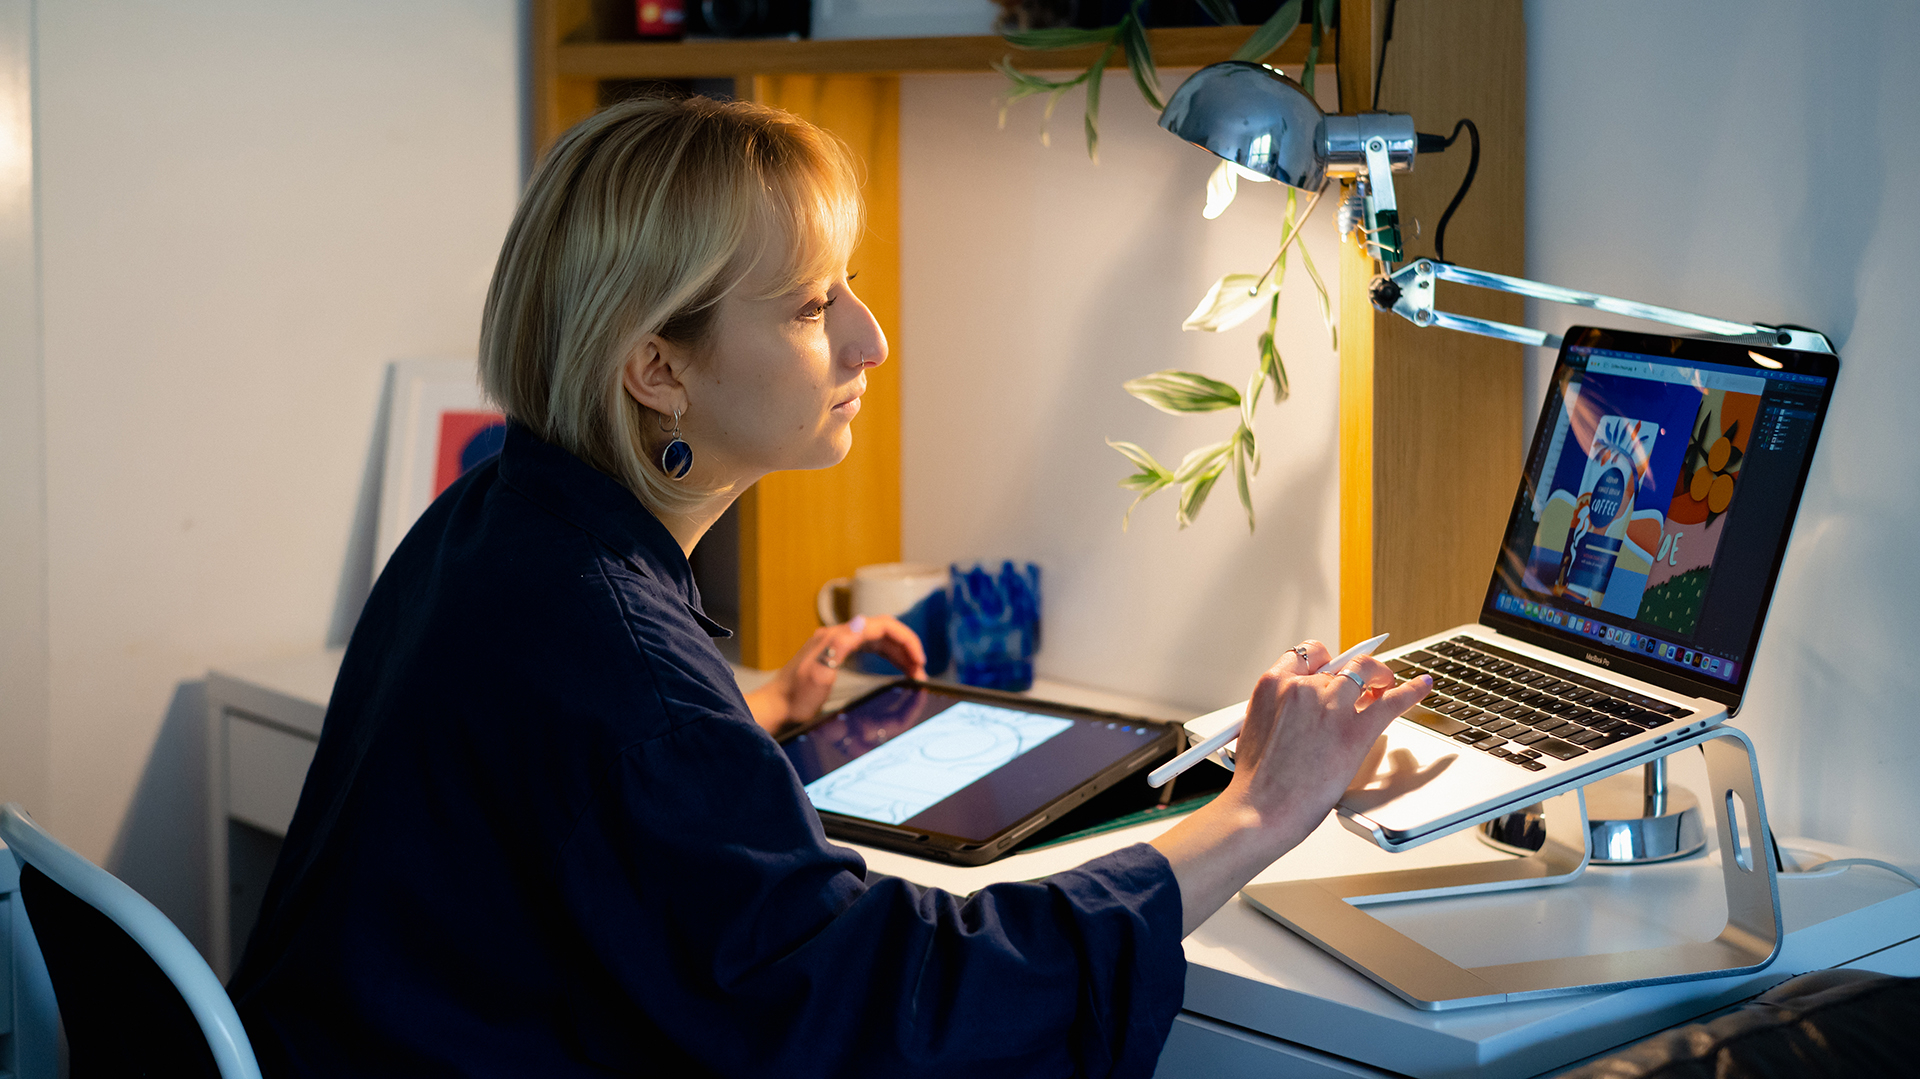 Femme assise à un bureau, tapant sur un ordinateur et tenant un stylet à la main, et tablette visible au second plan